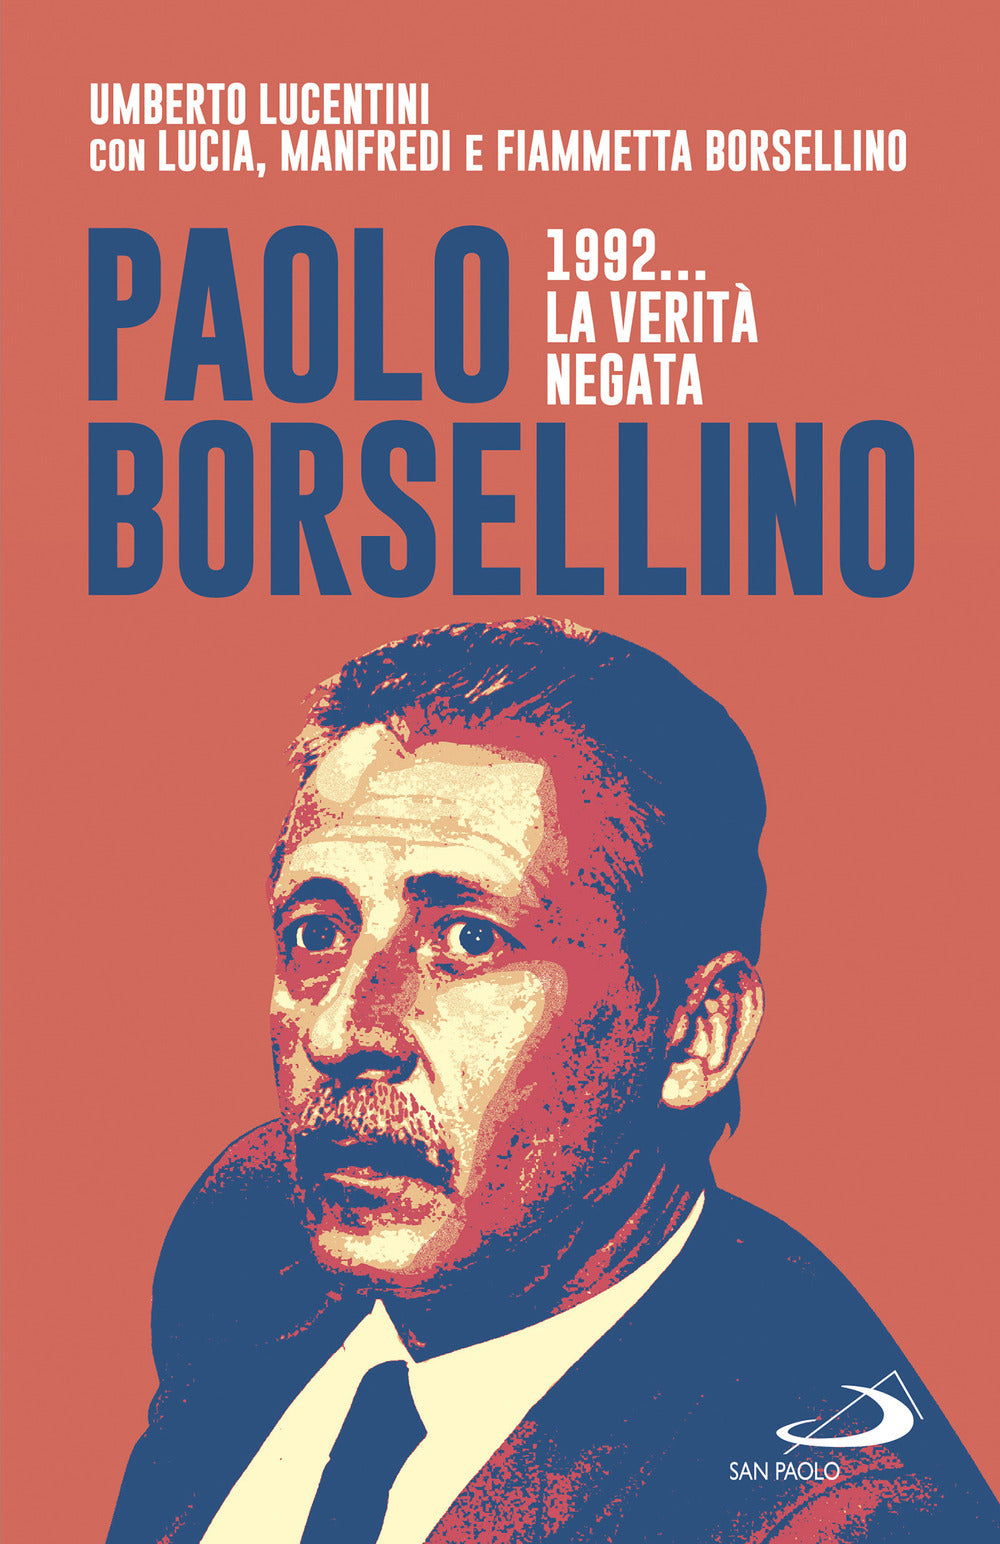 Paolo Borsellino 1992... La verità negata.